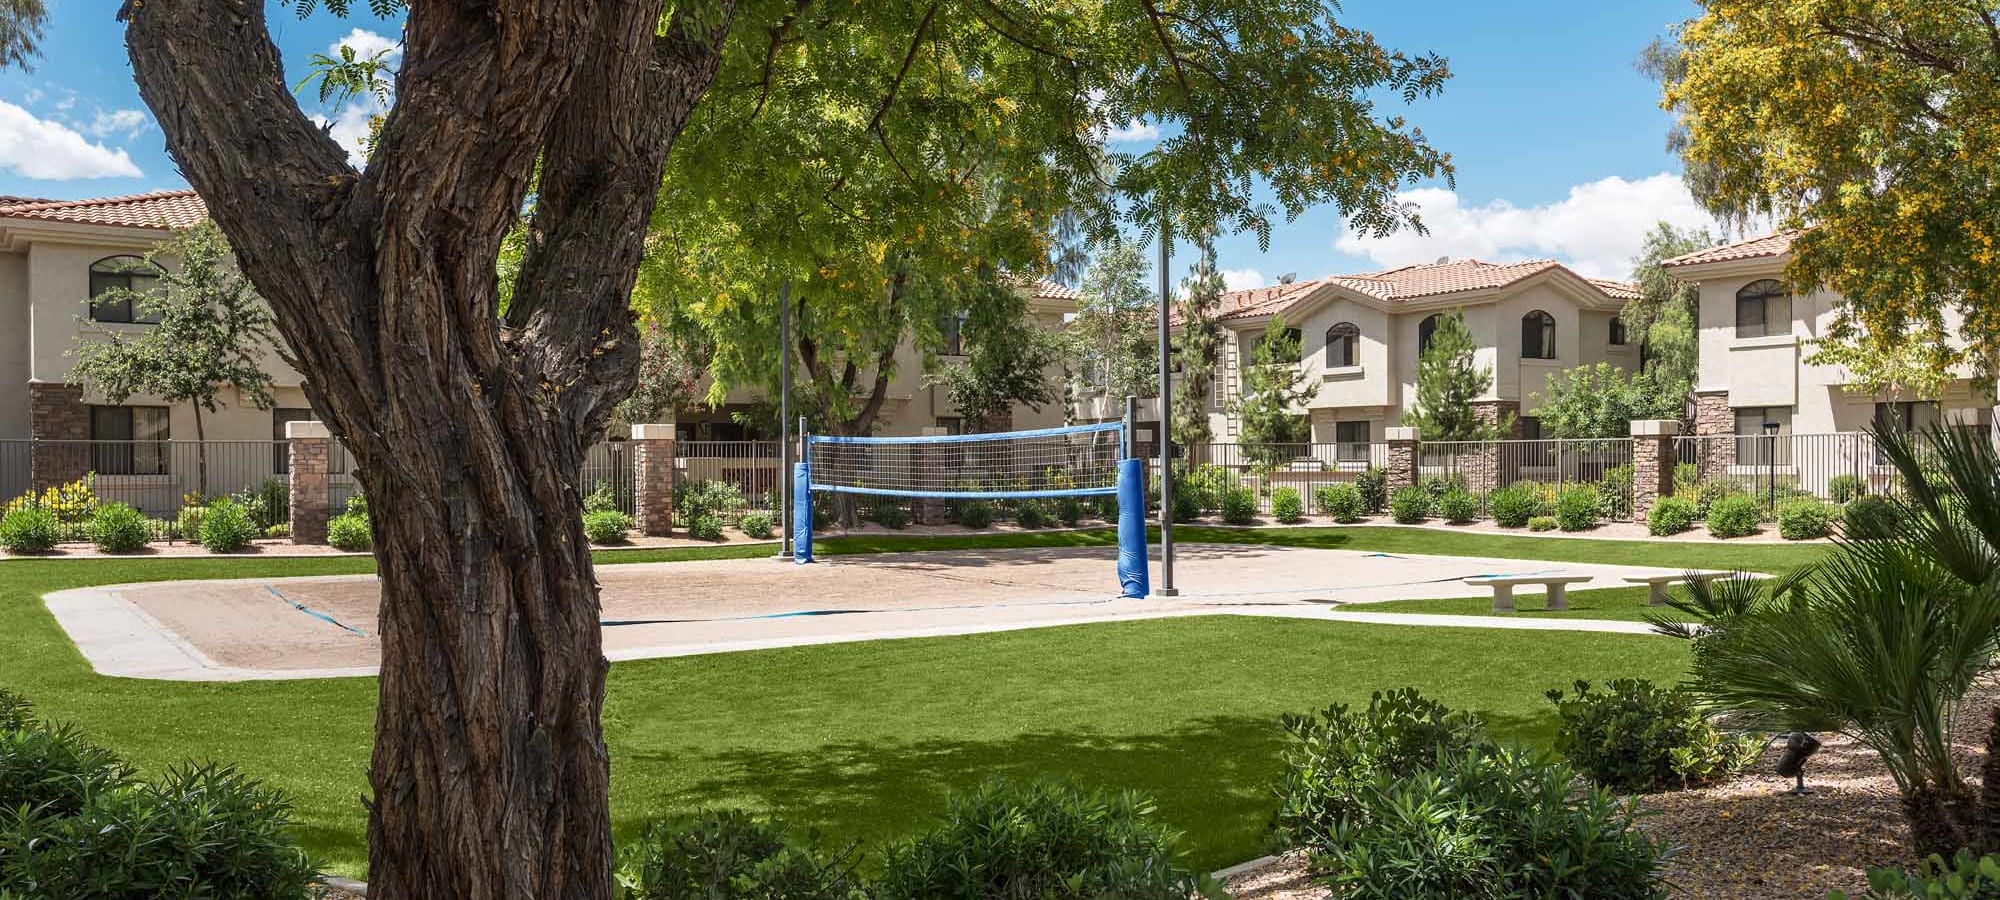 Volleyball court at San Hacienda in Chandler, Arizona